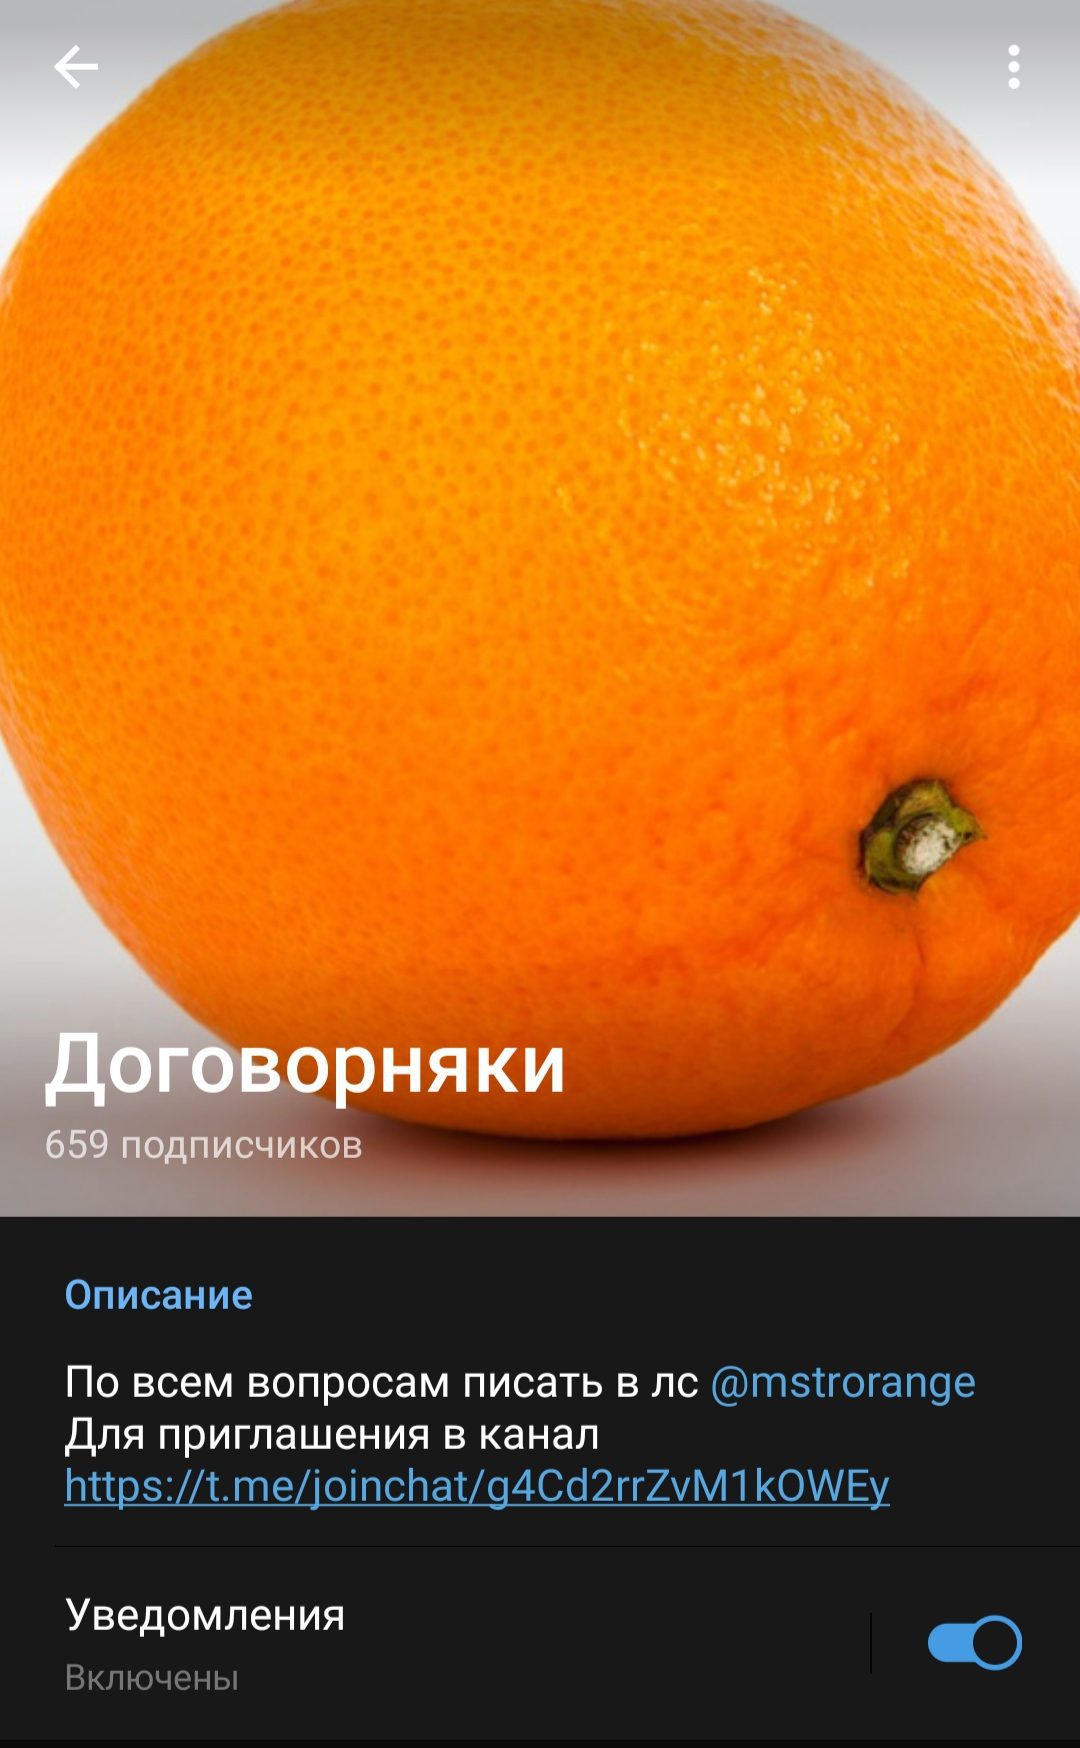 Заводной апельсин Telegram